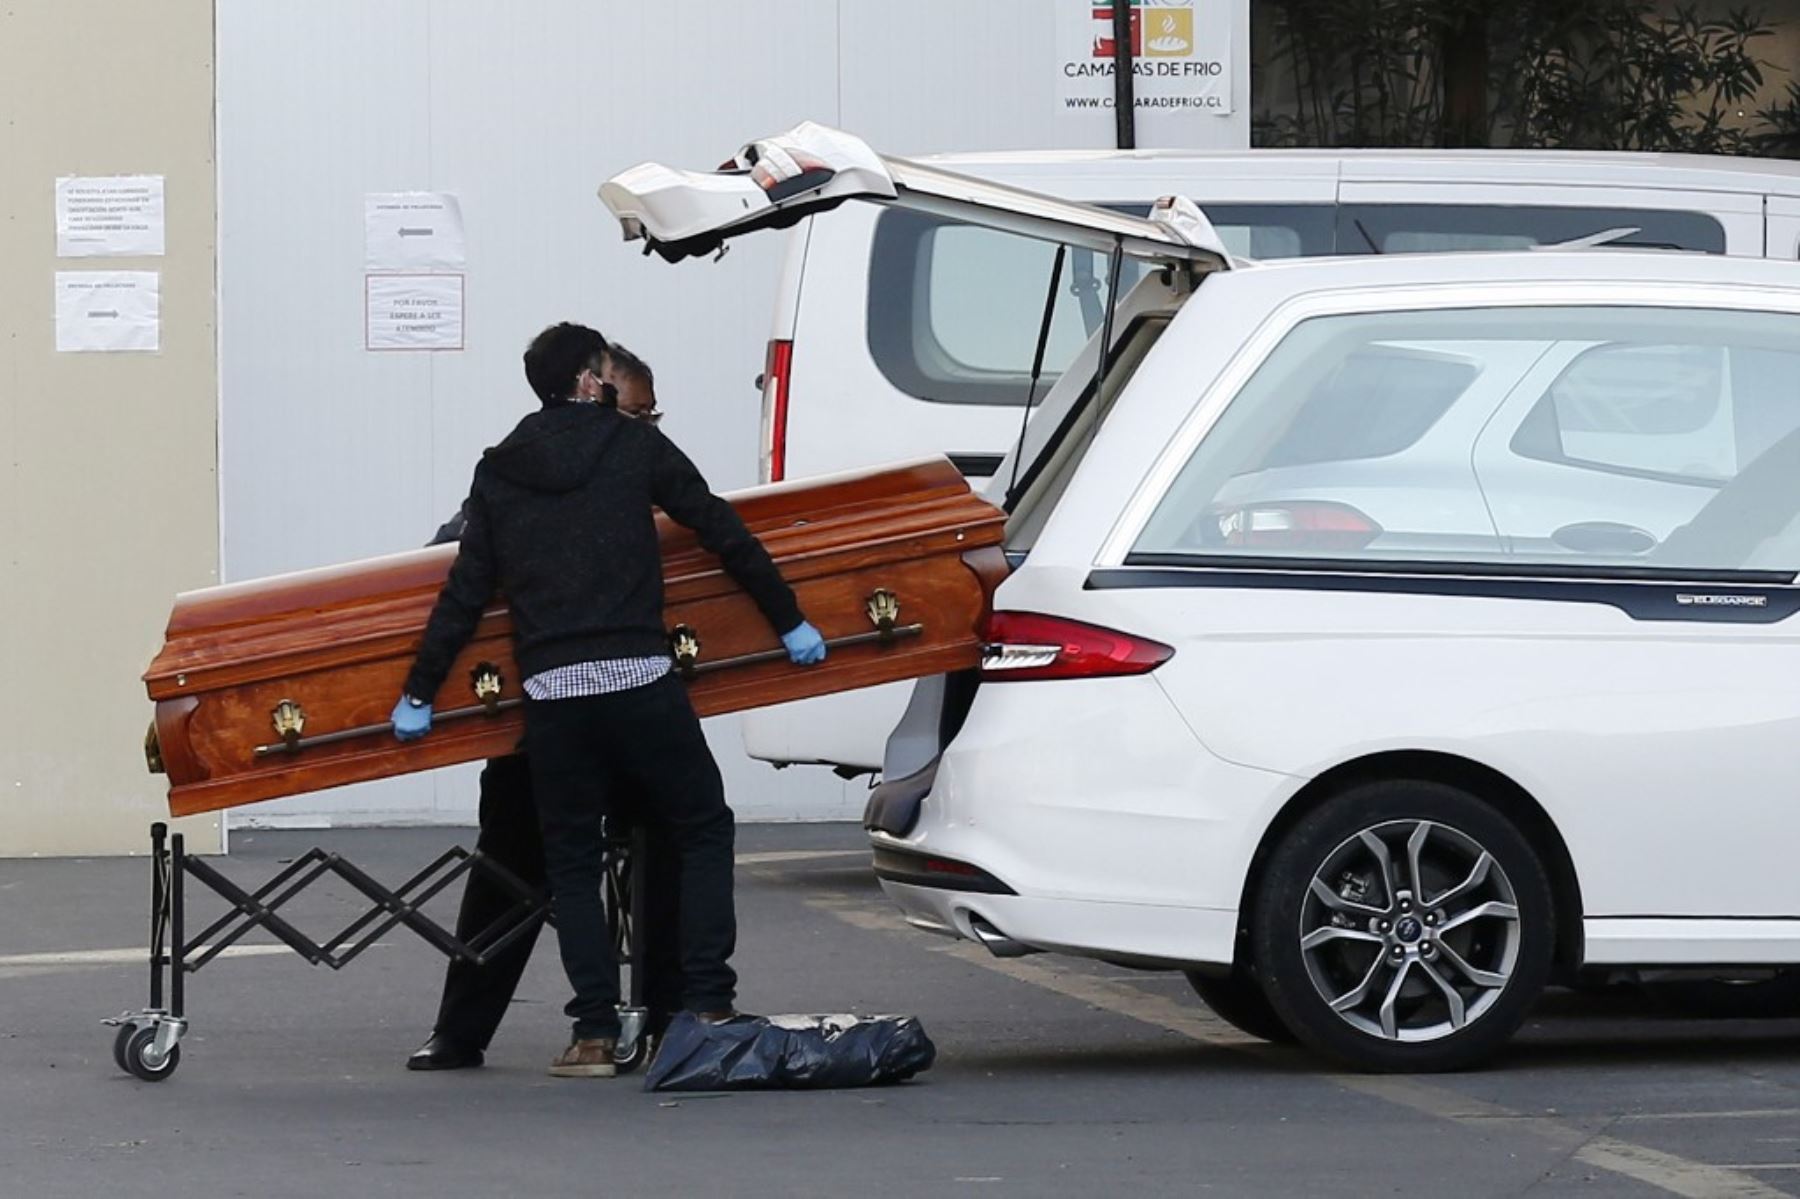 Los empleados de una funeraria pusieron el ataúd que contiene el cuerpo de una persona que murió de COVID-19 dentro de un vehículo, afuera del Hospital San José en Santiago. Foto: AFP